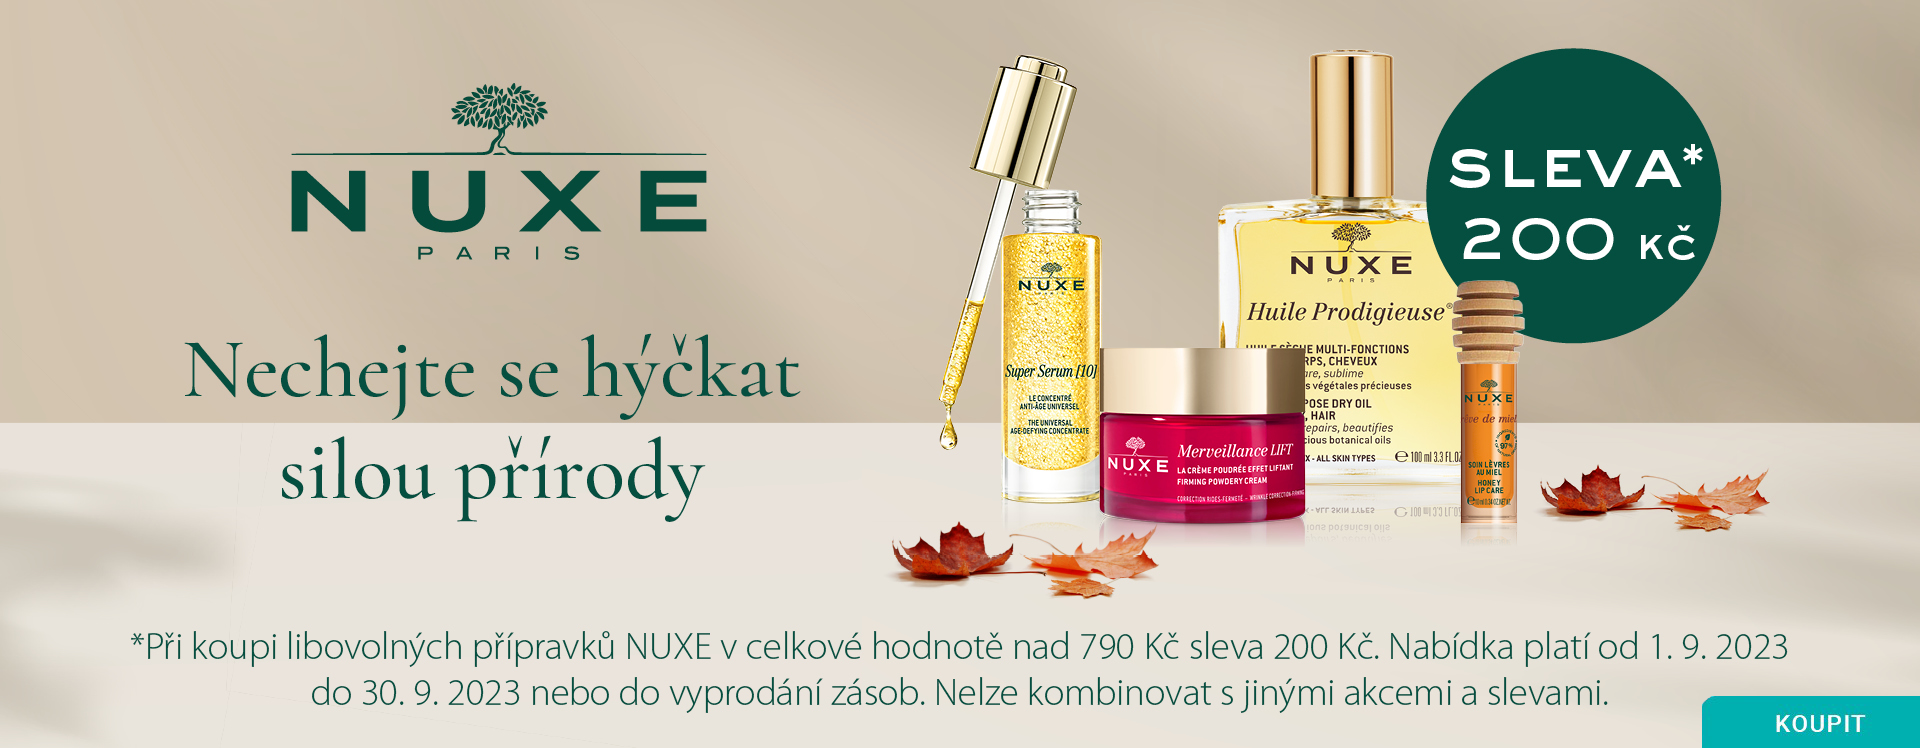 Onlinelekarna.cz | NUXE Akce